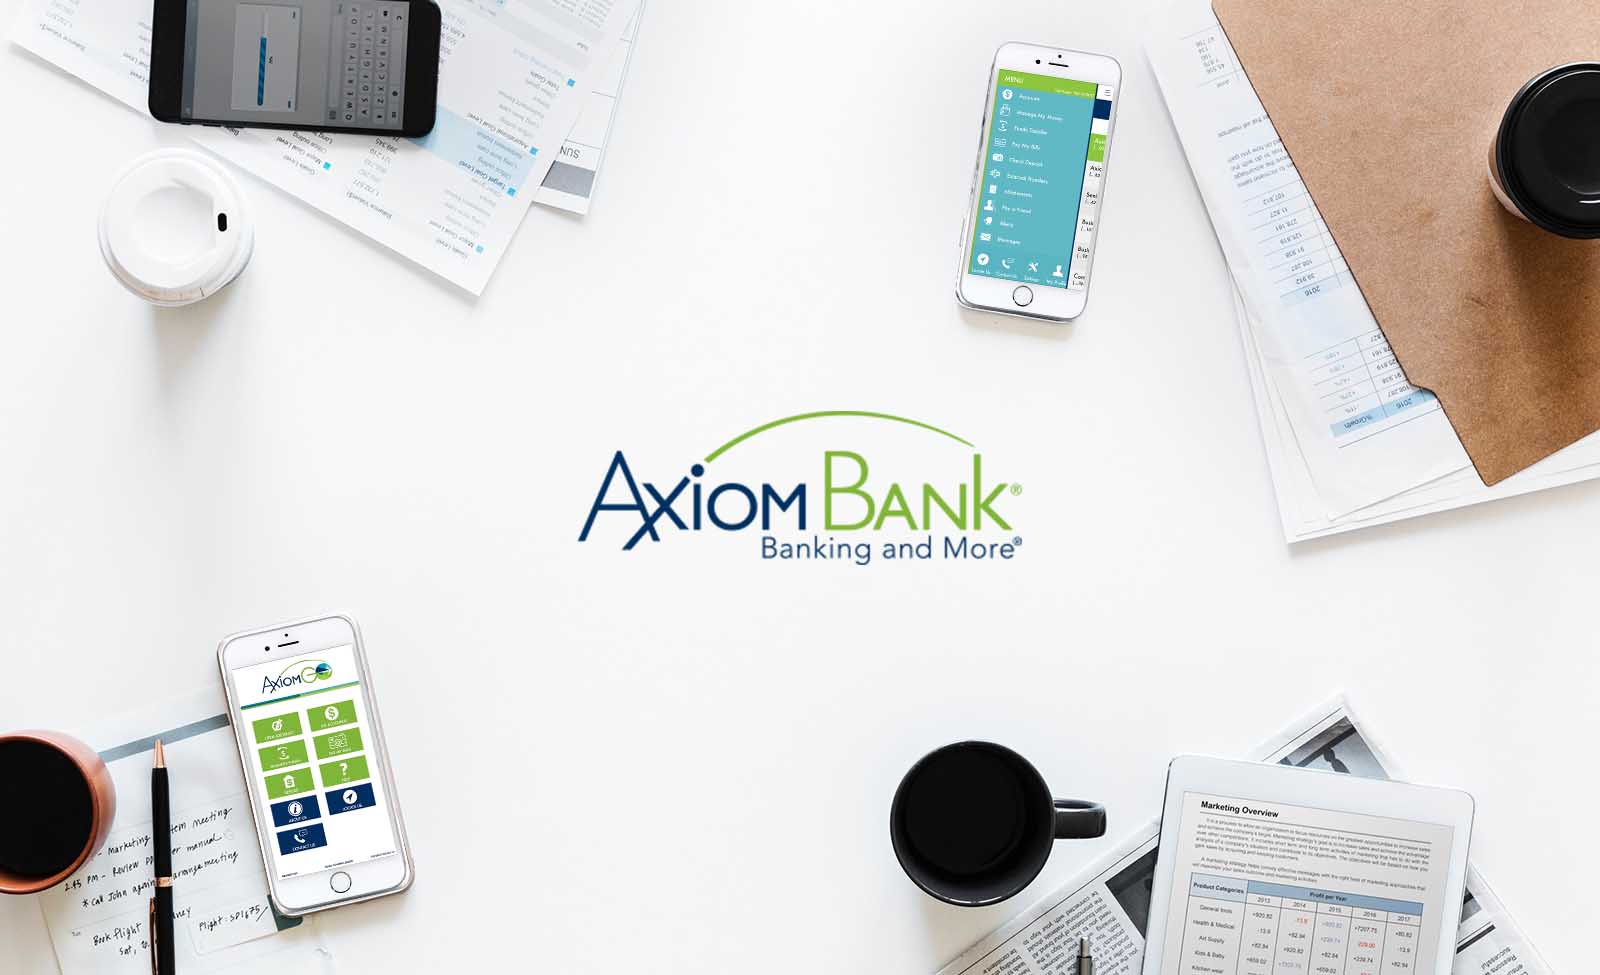 Axiom Bank Plan your financial future with AxiomGO